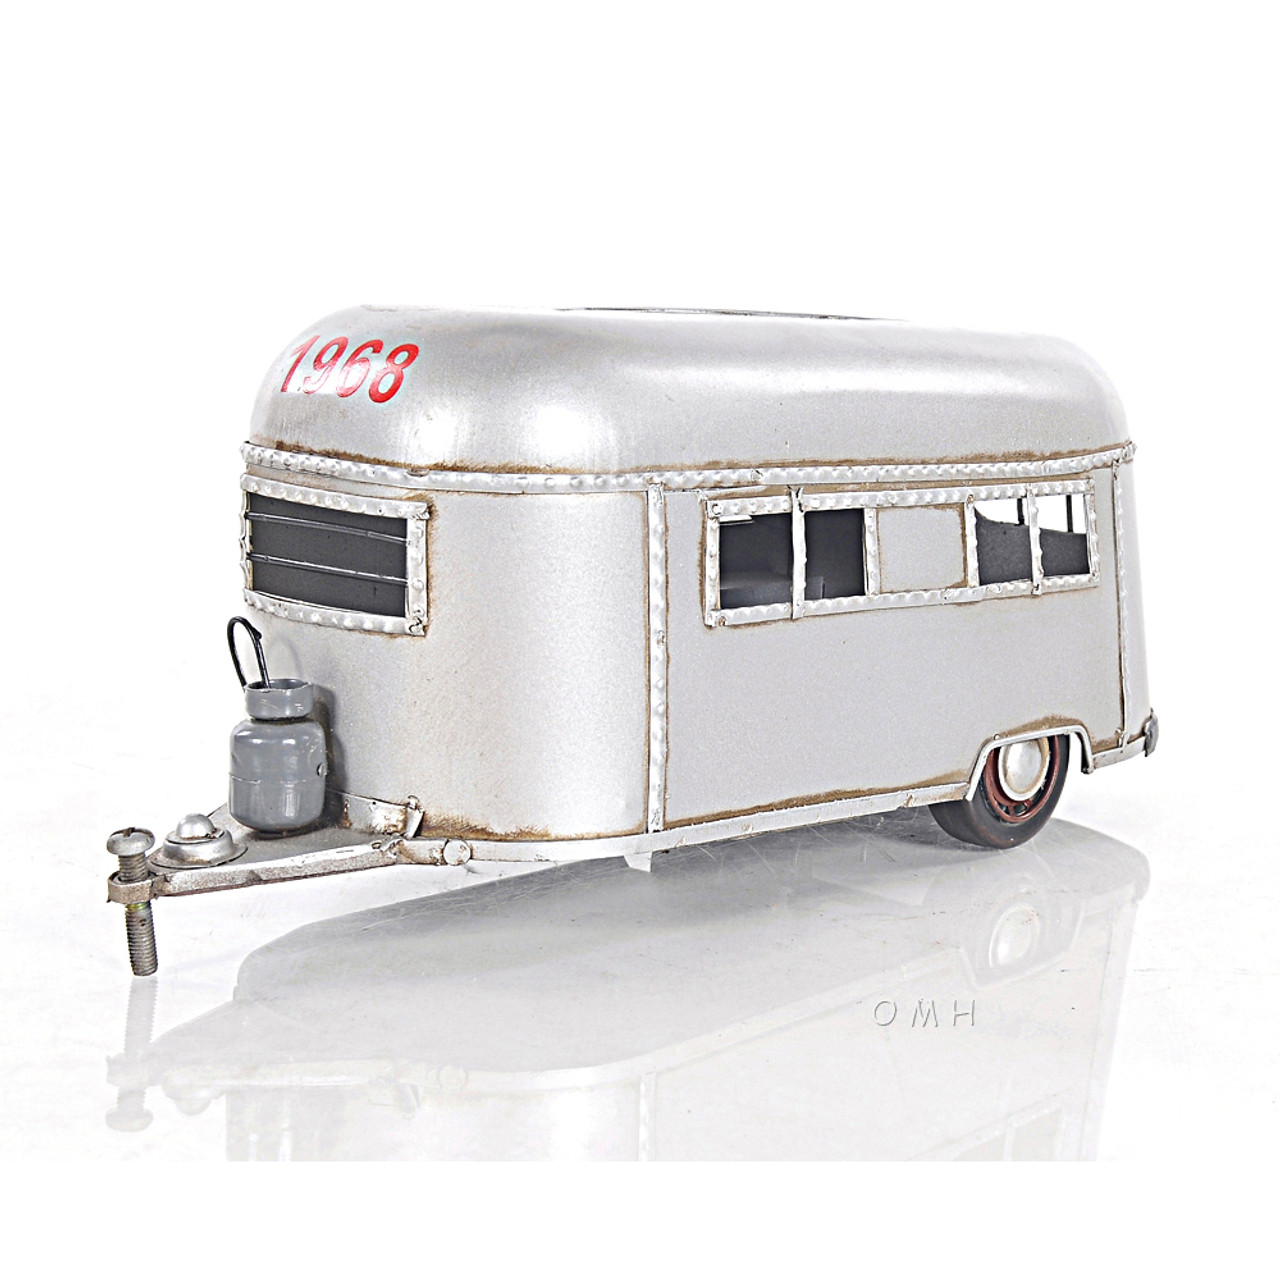 Tissue Holder Travel Camping Trailer Metal Model Camper